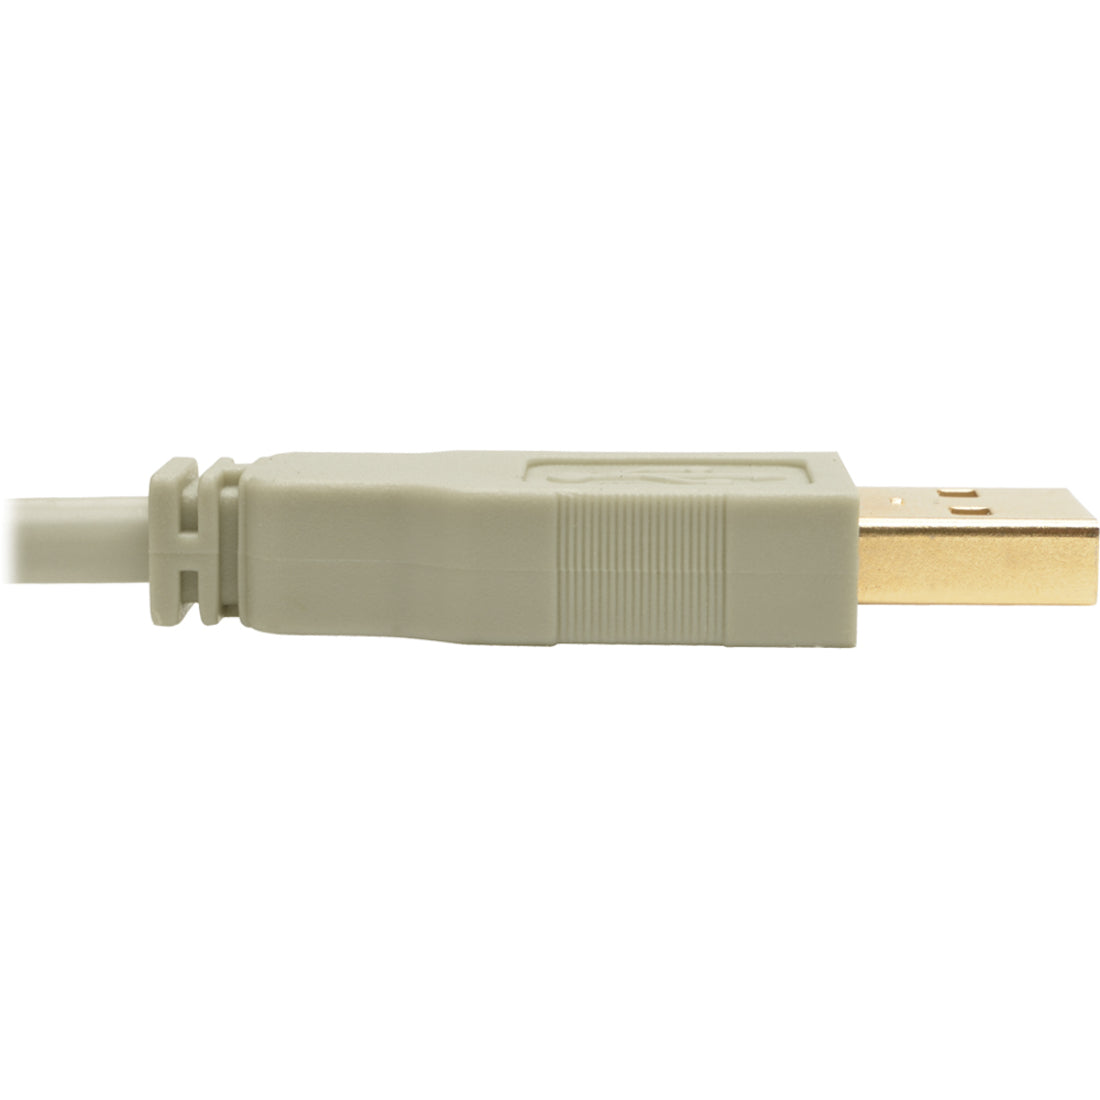 Tripp Lite U022-010-BE USB 2.0 Hi-Speed A/B Cable (M/M), Beige, 10 ft.